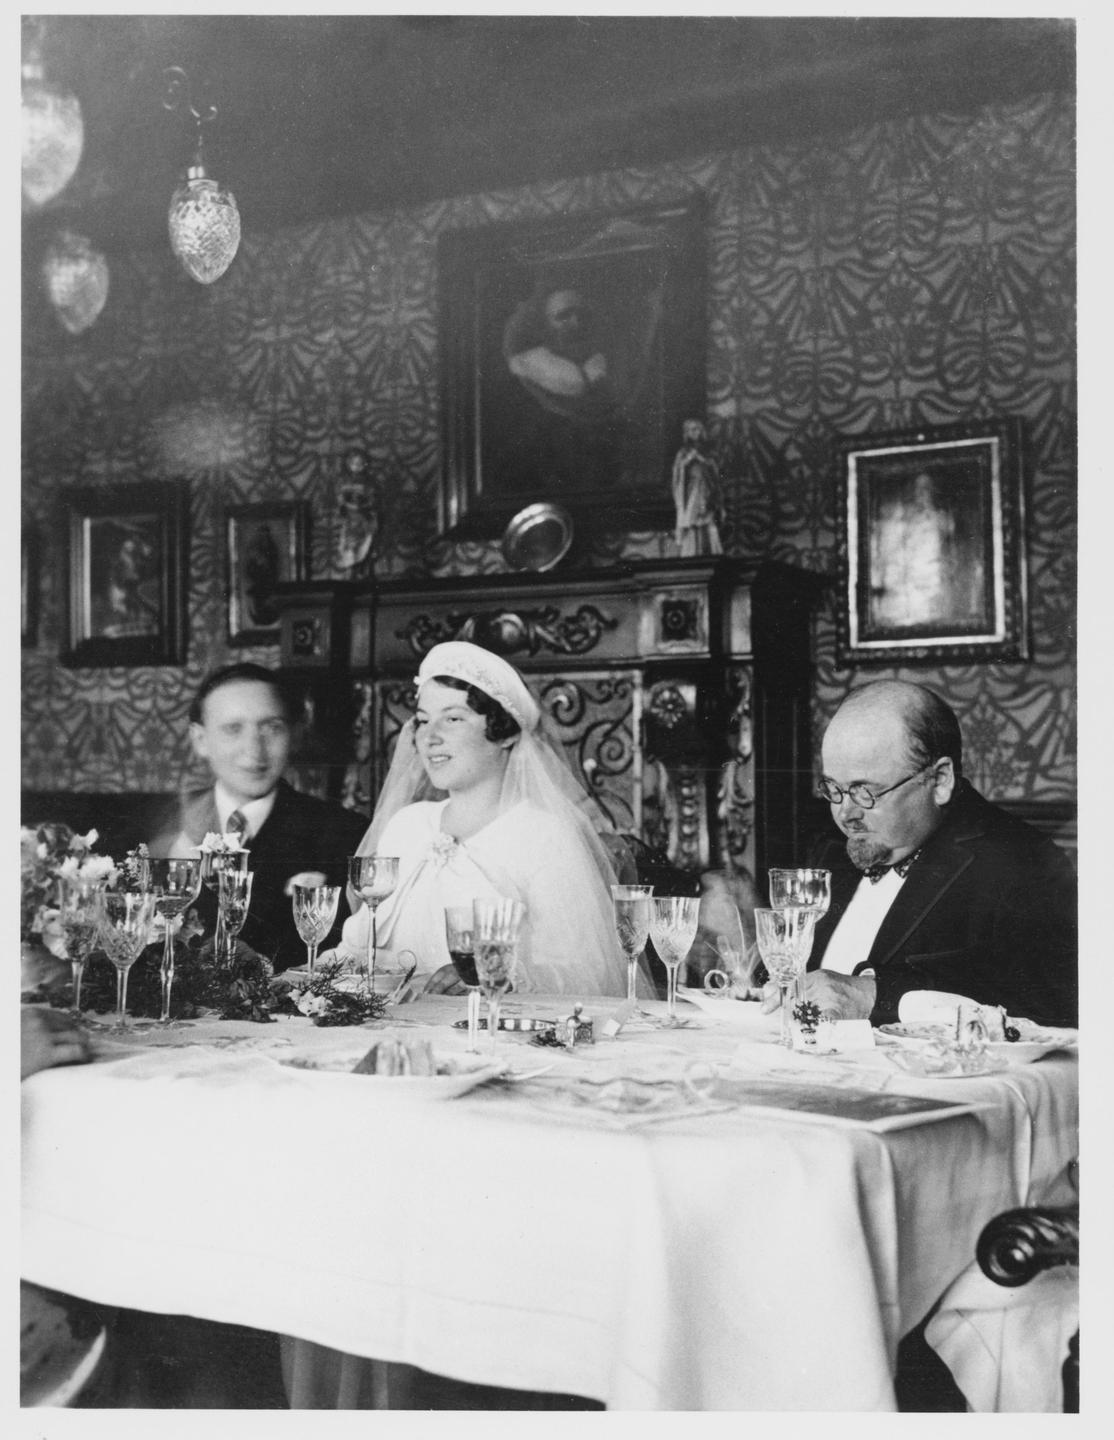 Braut und Bräutigam sitzen am Esstisch, im Hintergrund sind Gemälde zu sehen.